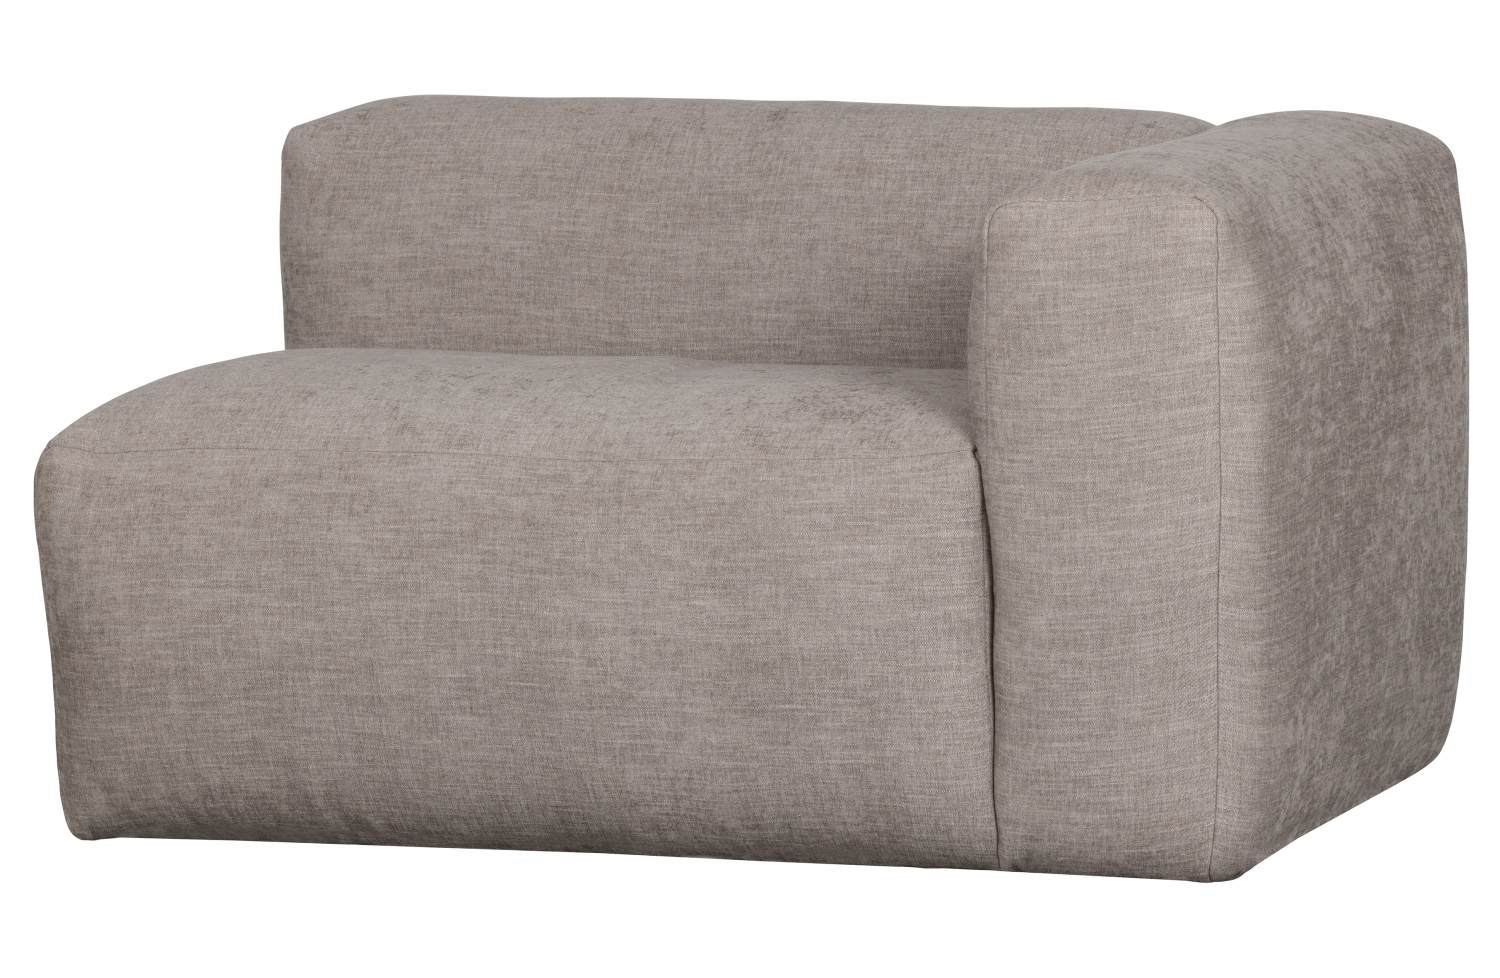 Das Modulsofa Yent als Eck-Element überzeugt mit seinem modernen Design. Gefertigt wurde es aus Webstoff, welcher einen hellgrauen Farbton besitzt. Das Sofa ist in der Ausführung Rechts. Die Sitzhöhe des Sofas beträgt 47 cm.